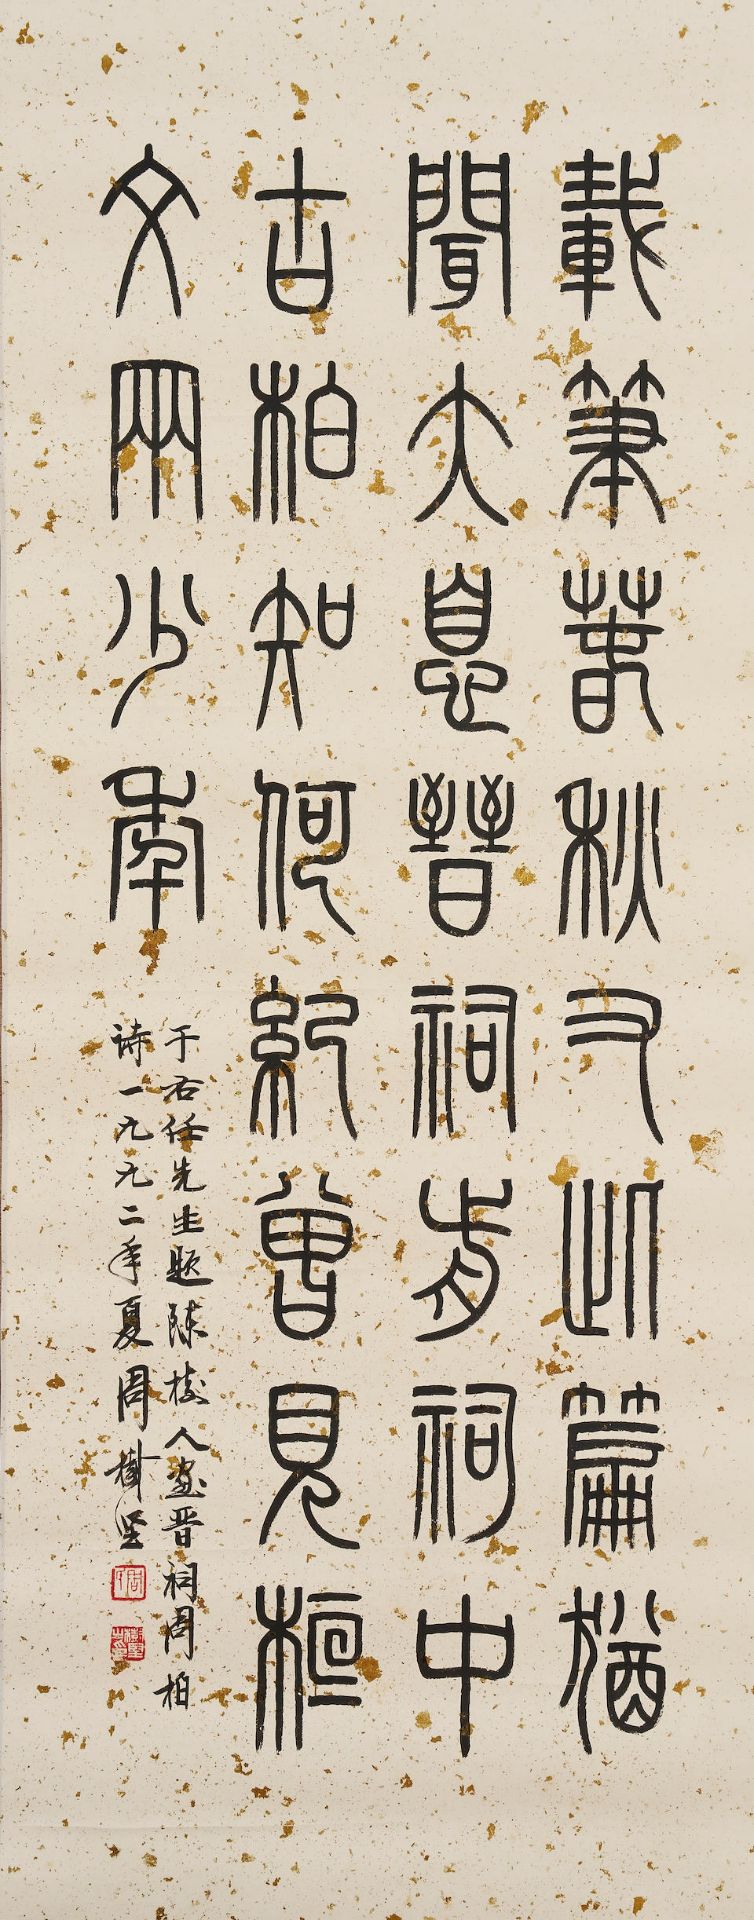 Zhou Shujian (b.1947) Calligraphy in Seal Script